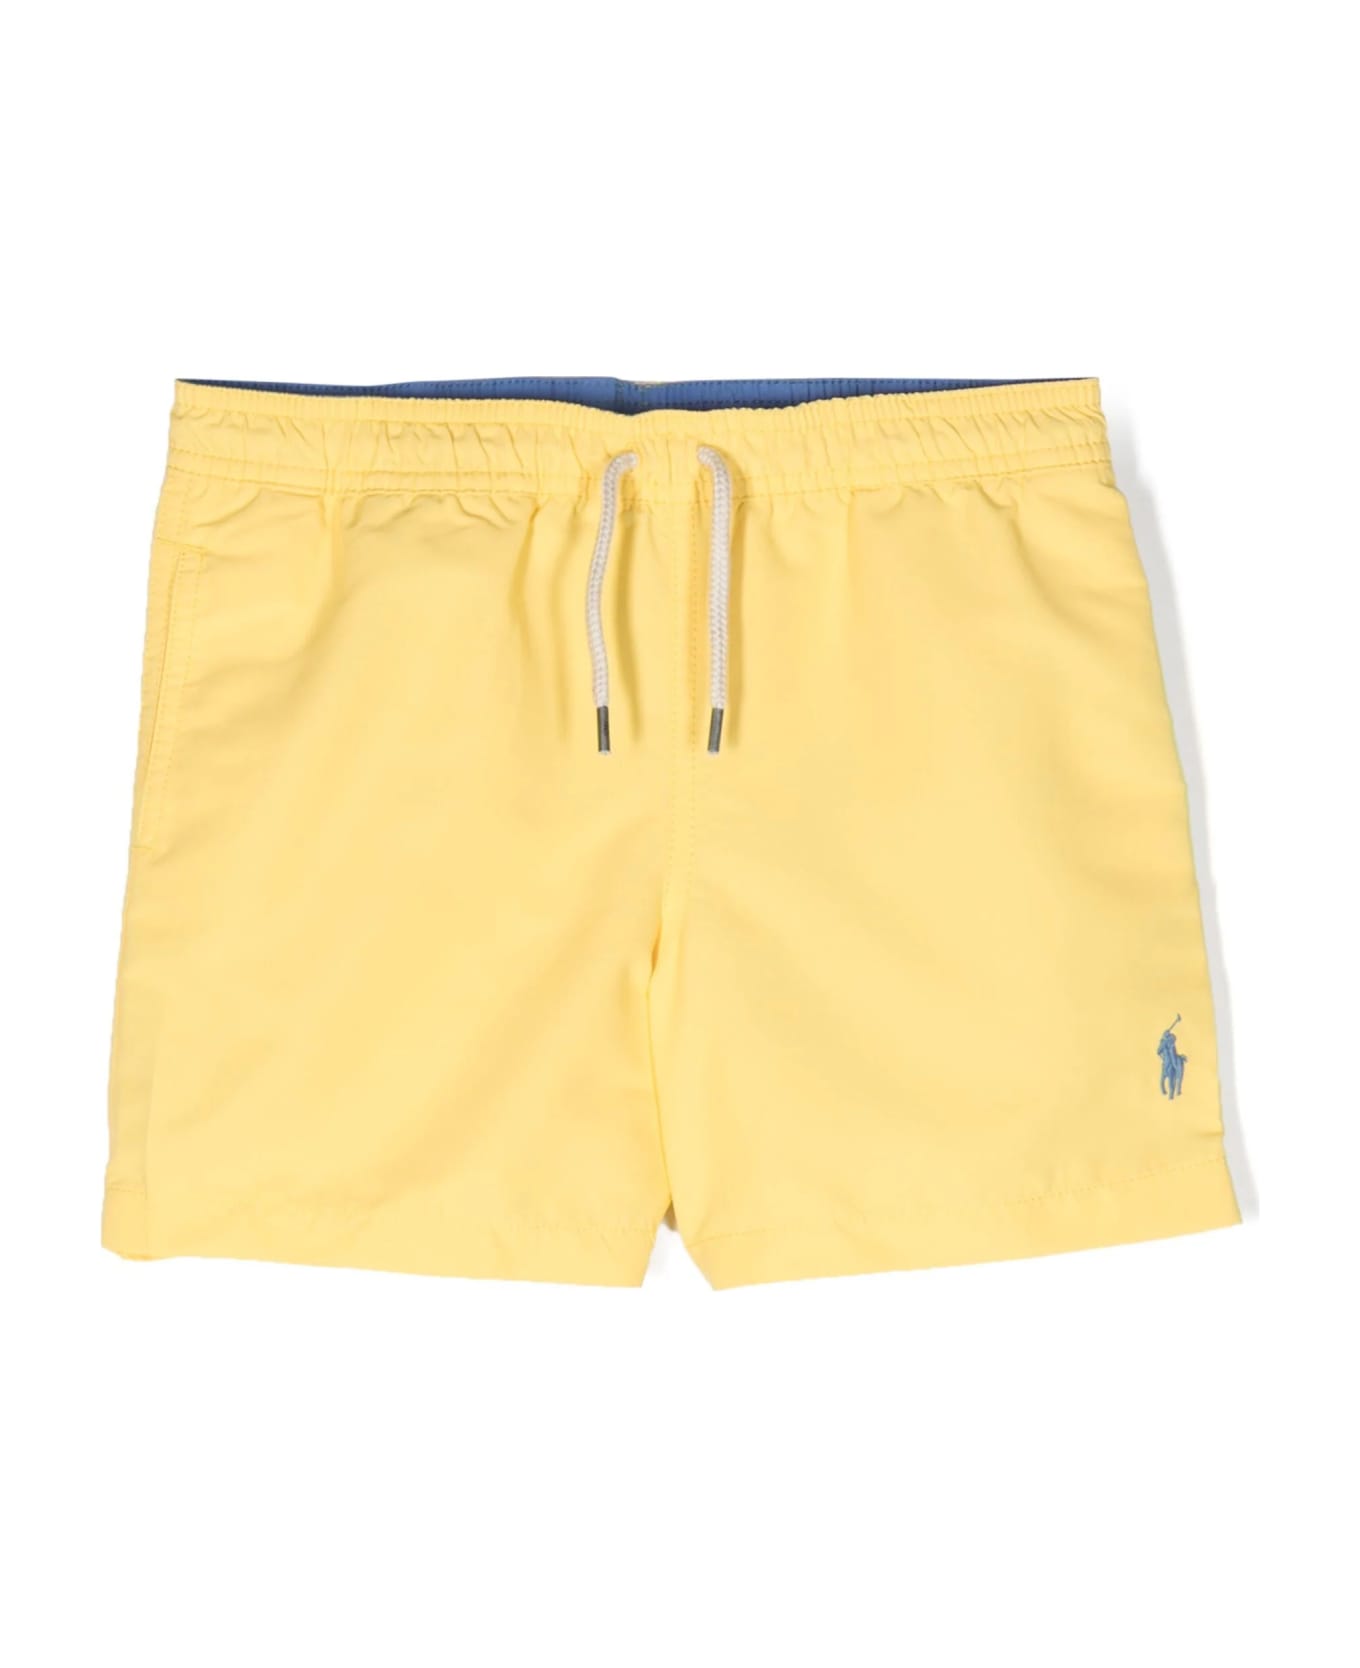 Ralph Lauren Yellow Swimwear With Light Blue Pony - Yellow